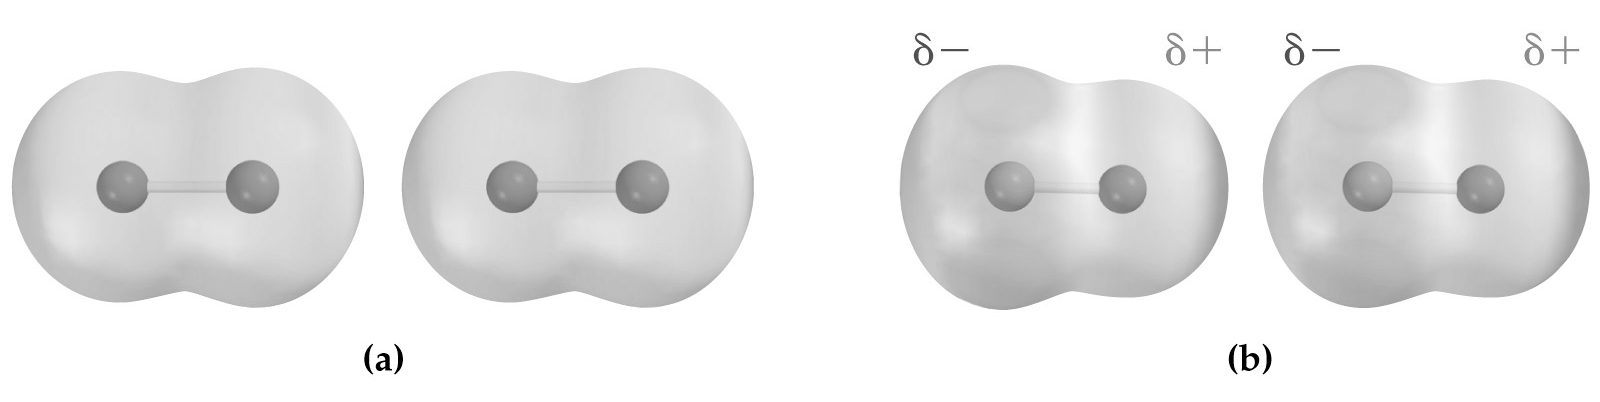 Másodlagos kémiai kötések Van der Waals féle kötések - lezárt elektronhéjú atomok vagy molekulák között alakul ki diszperziós hatás (London-féle erők) indukciós effektus orientációs hatás